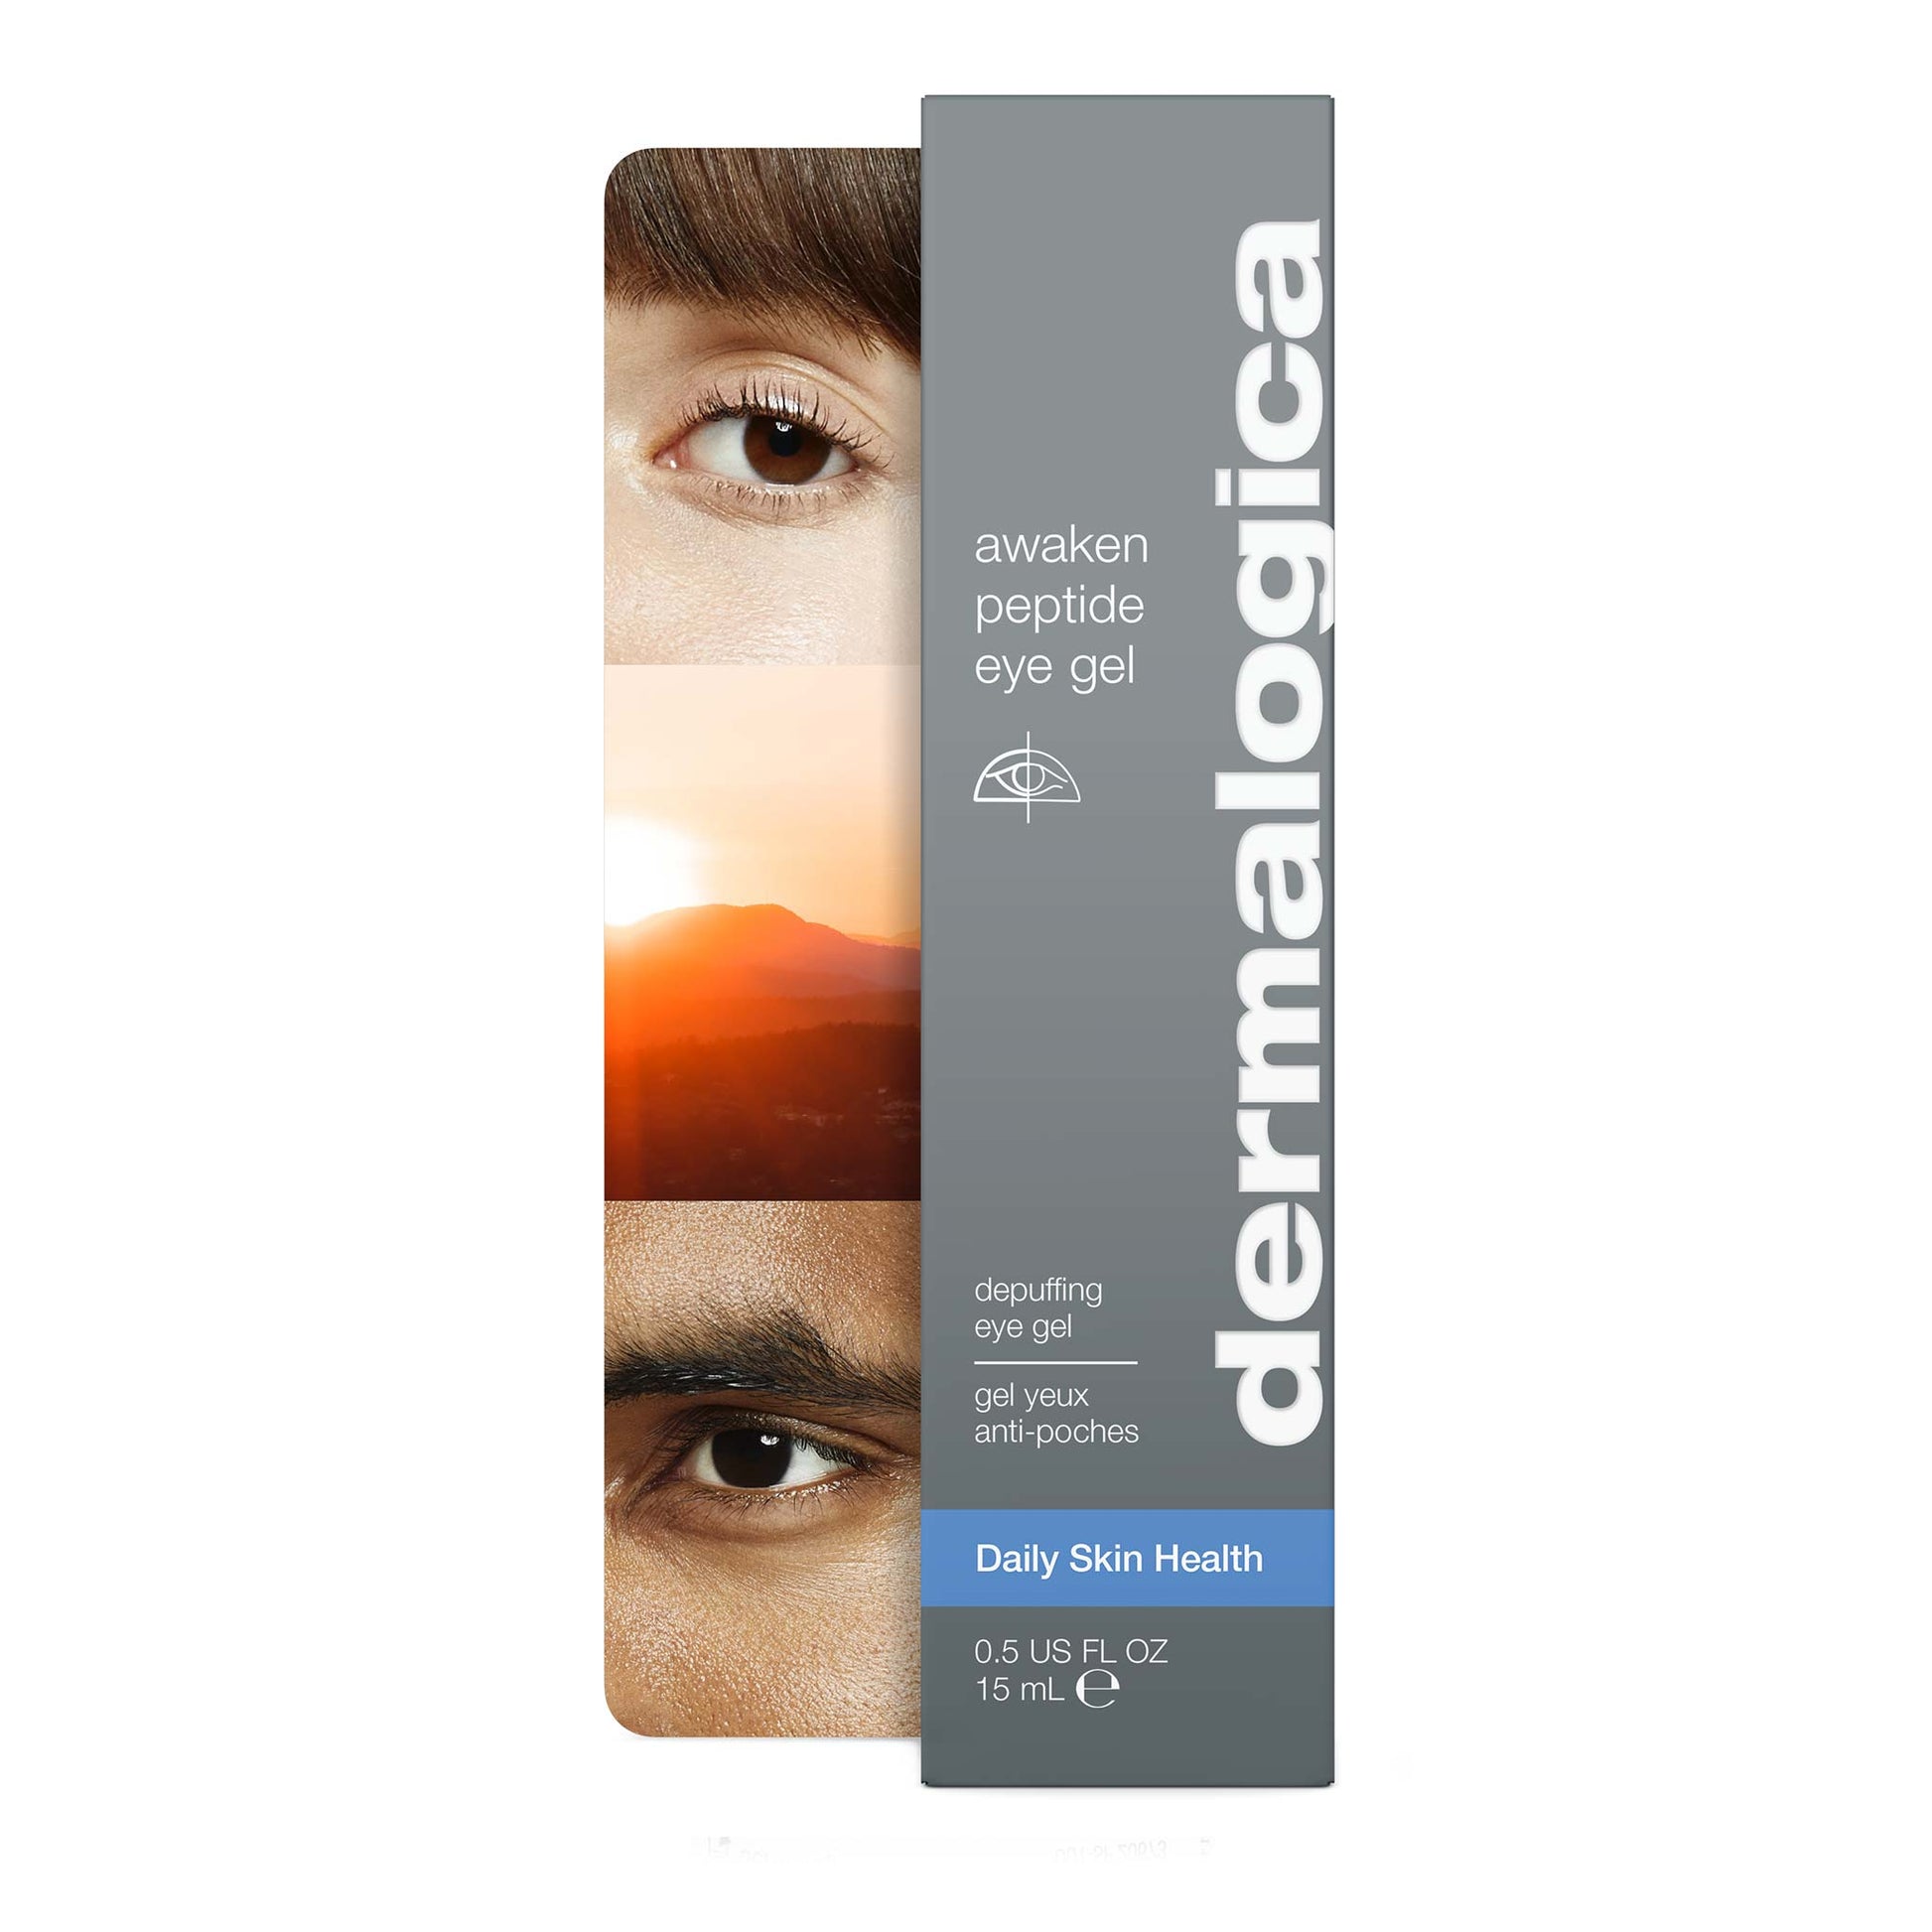 https://www.dermalogica.com/cdn/shop/products/awaken-peptide-eye-gel-carton-front.jpg?v=1698088562&width=1946